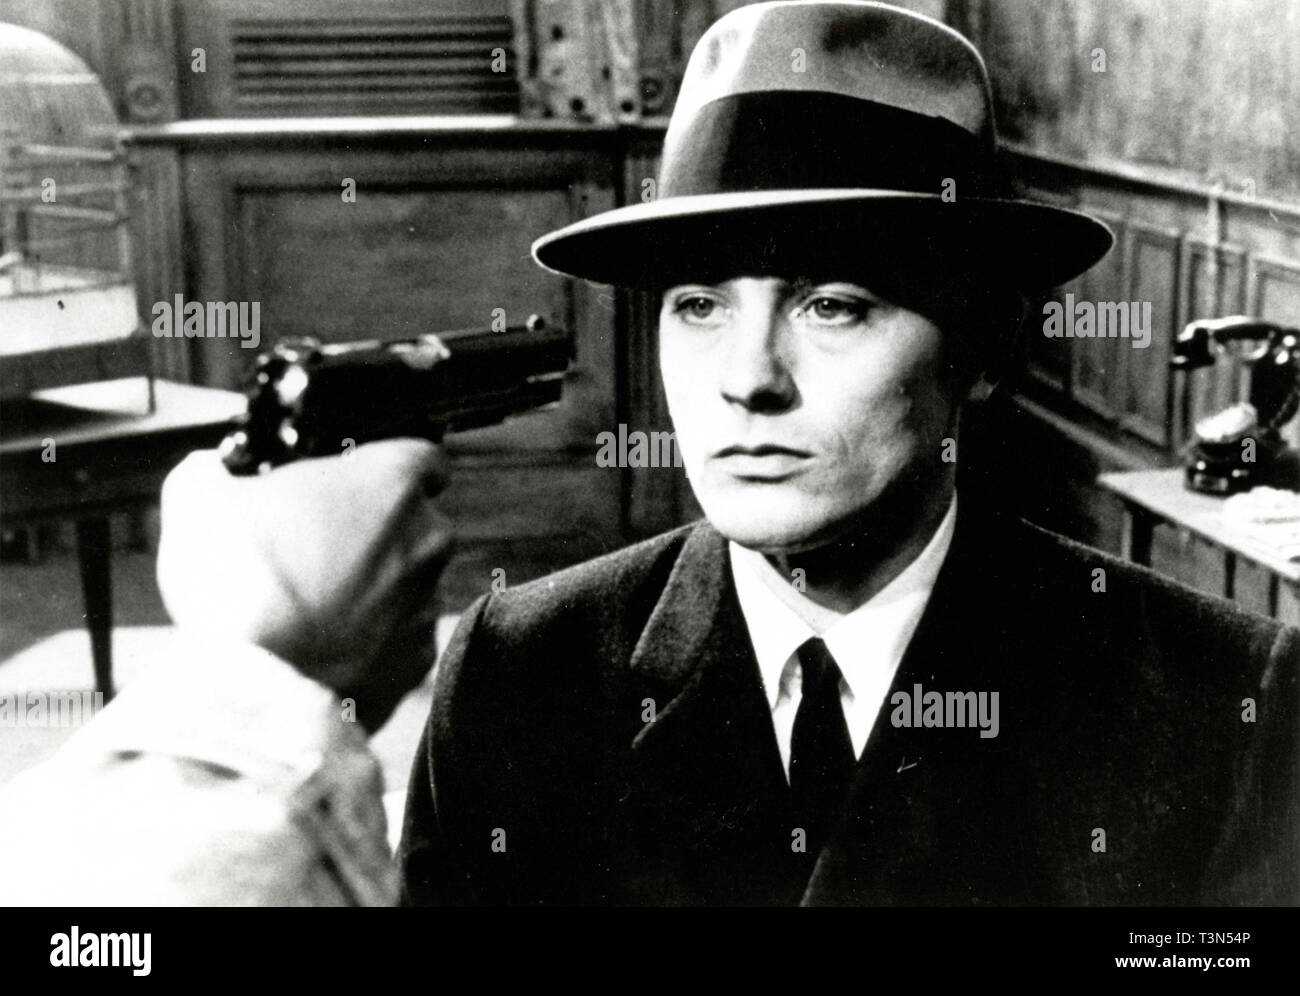 L'acteur français Alain Delon dans le film Le Samouraï, 1967 Banque D'Images